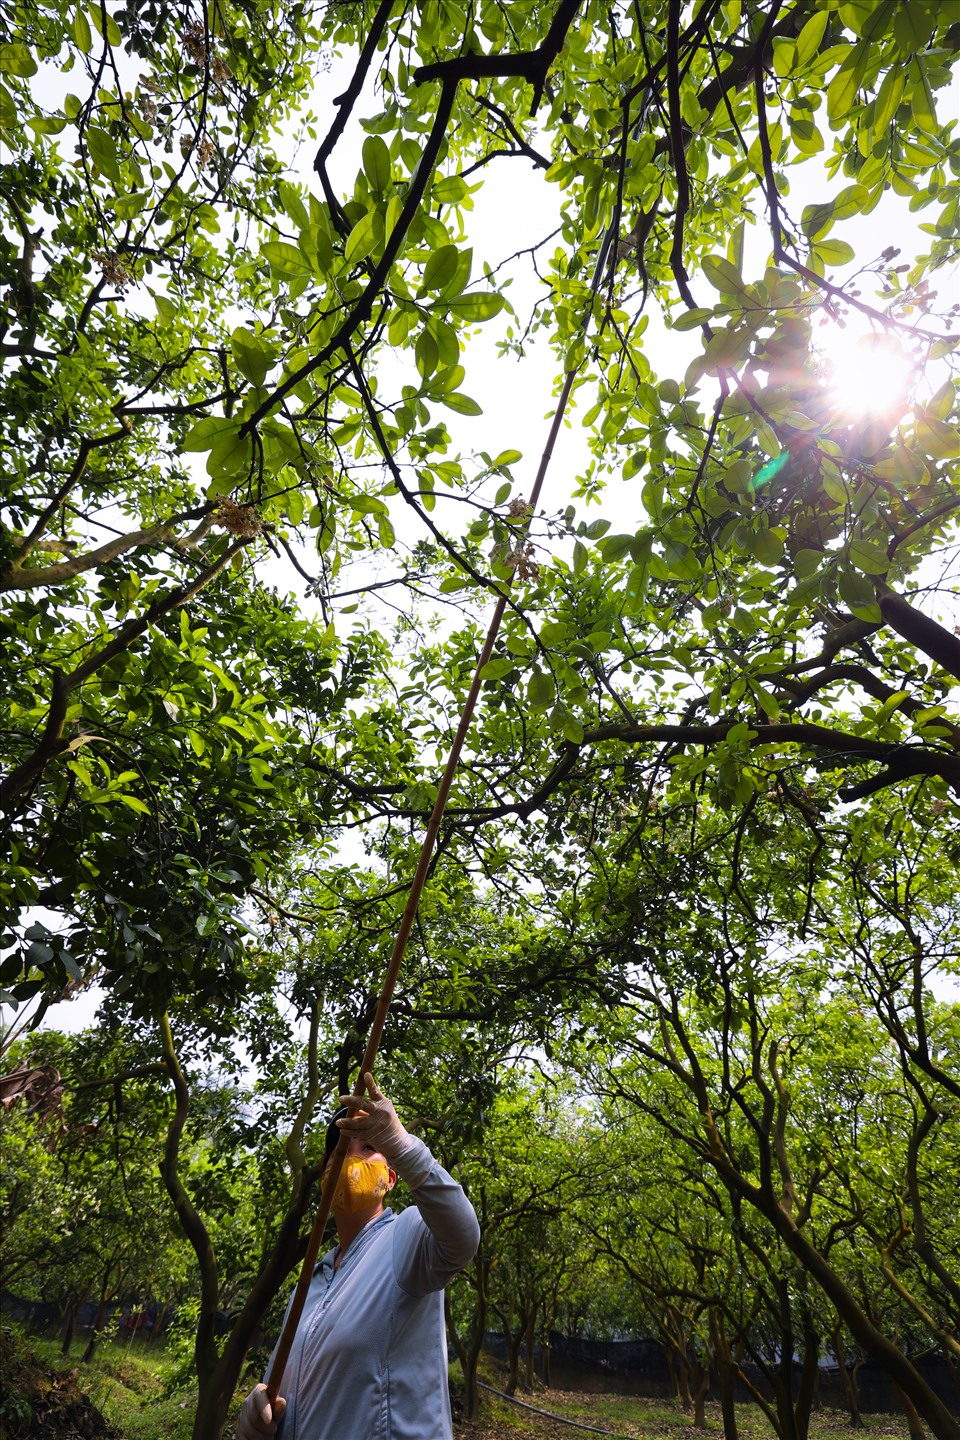 Nhiều cây bưởi có chiều cao 3-4m, người làm như chị Màu Thị Sơn phải leo hẳn lên cây, dùng cây sào kẹp chấm vào từng bông hoa trên những cành cao...